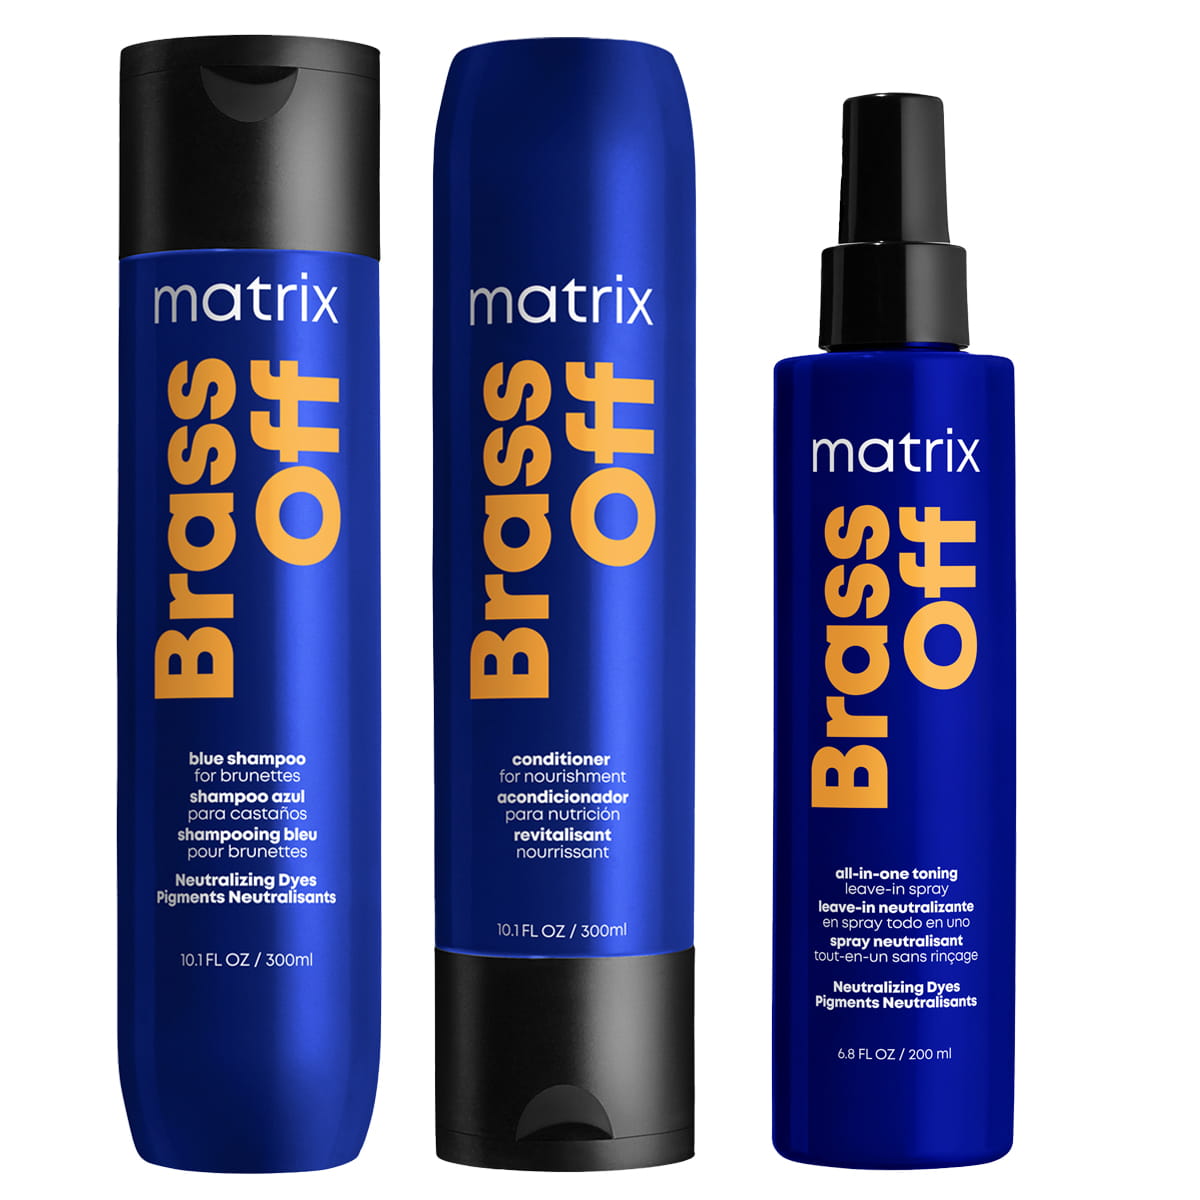 matrix brass off szampon ochładzający odcień